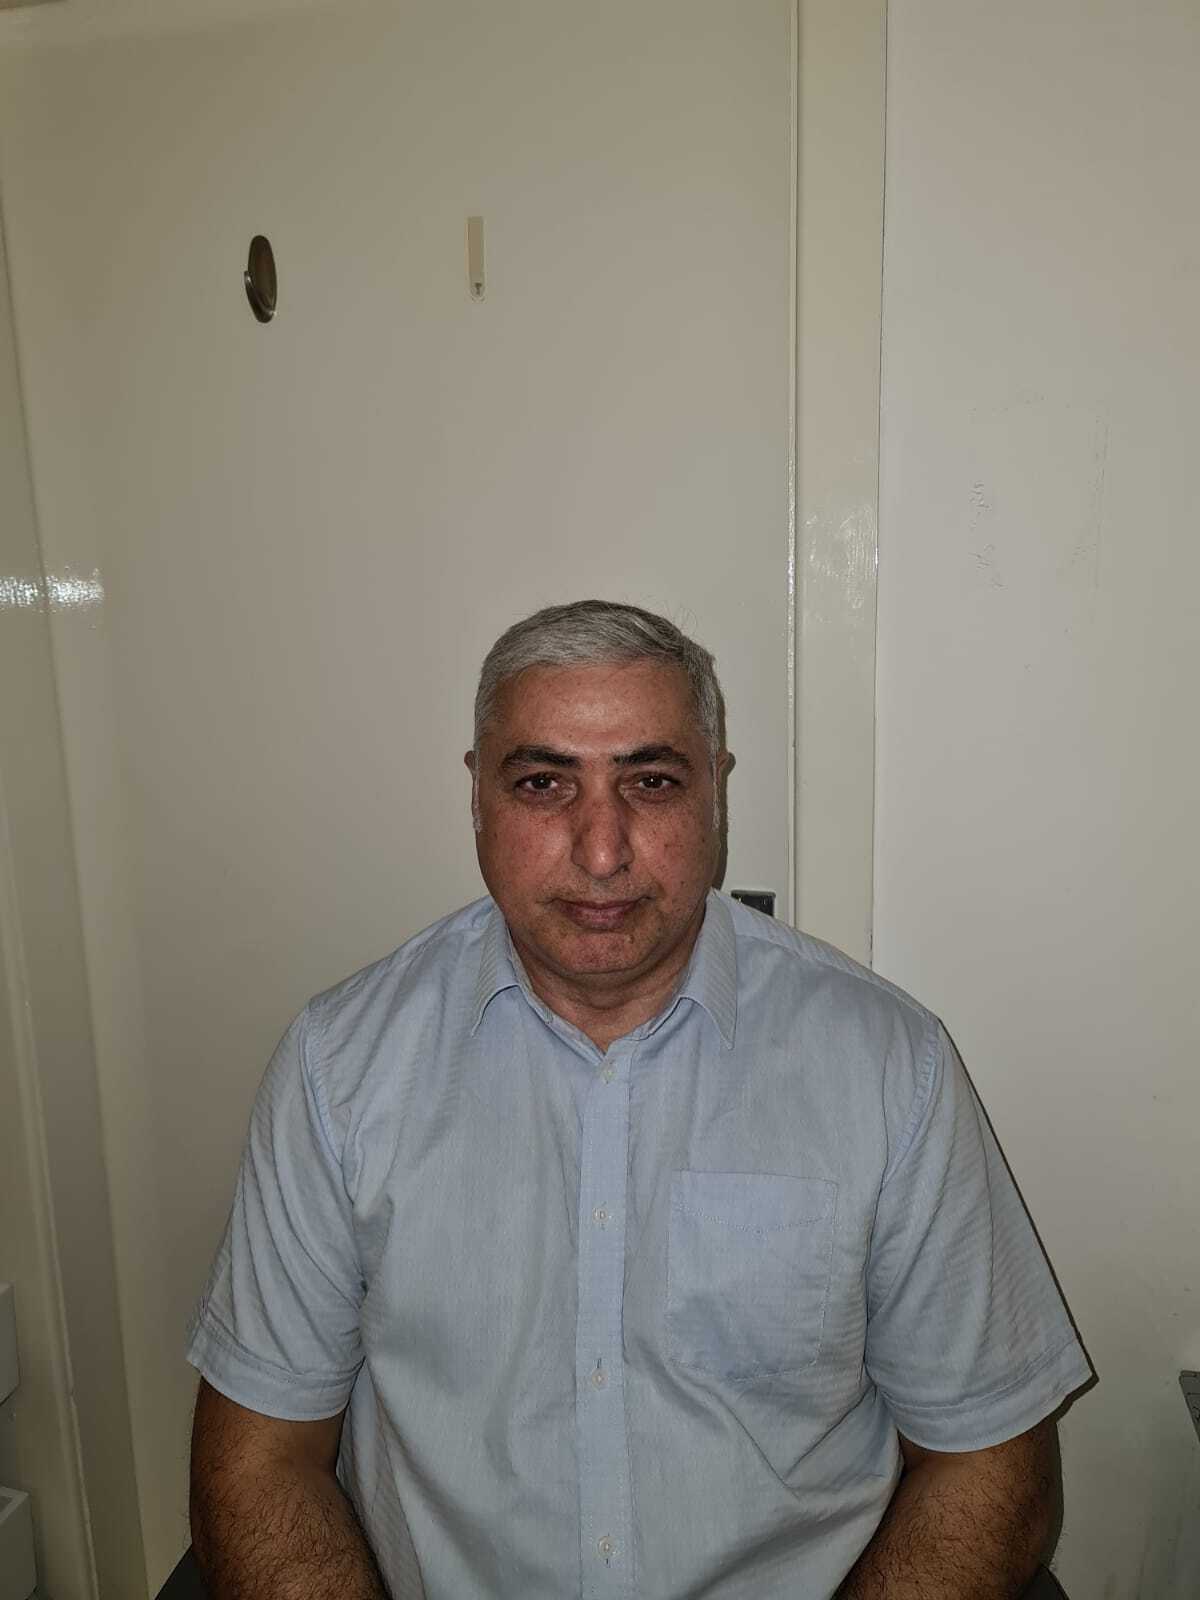 Dr Tariq Mahmood